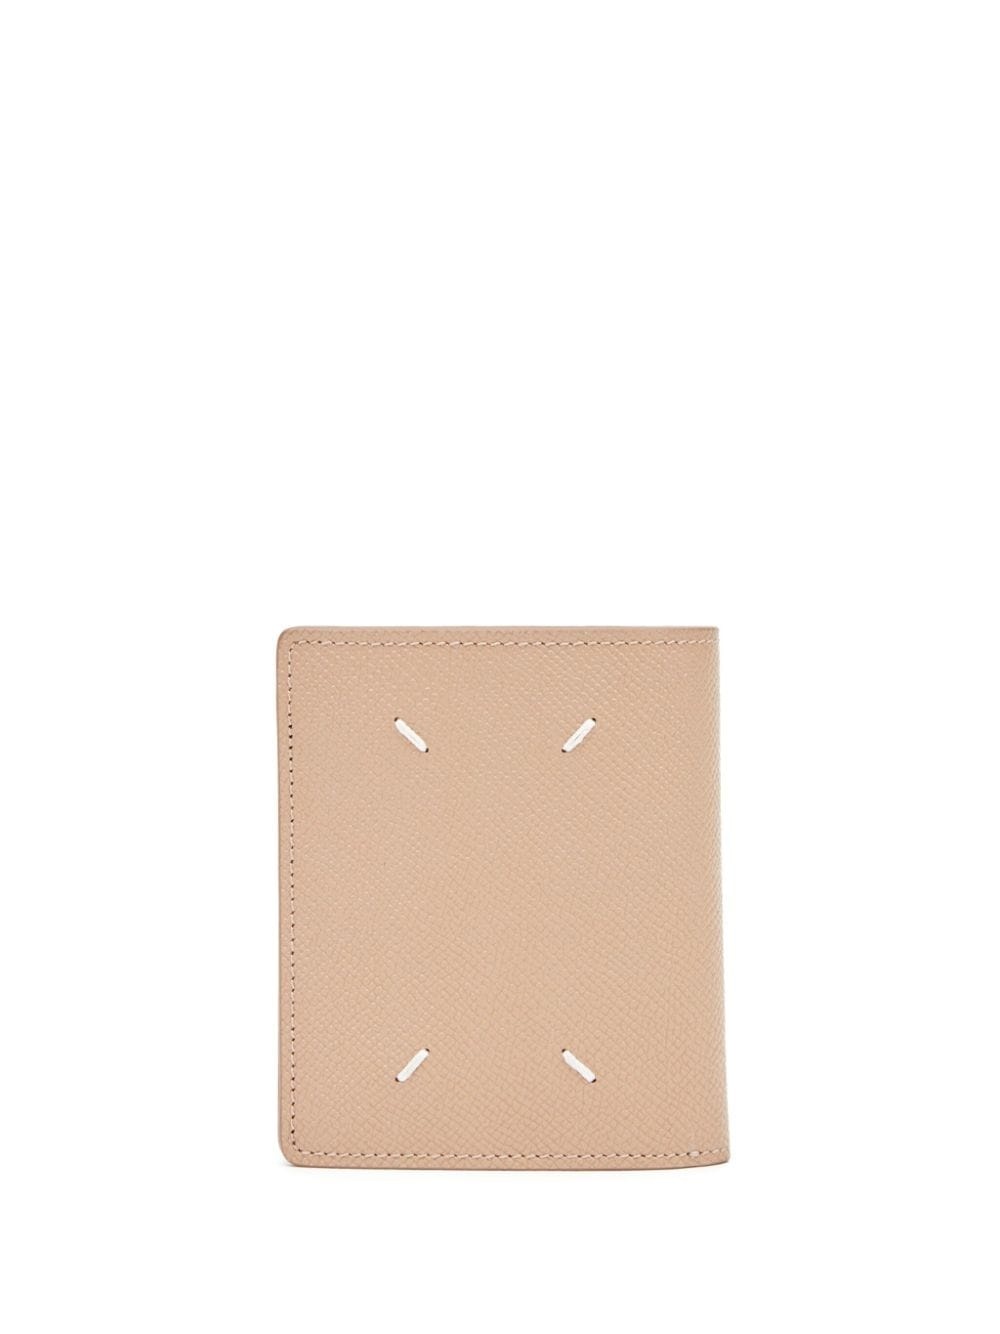 bi-fold leather wallet - 2